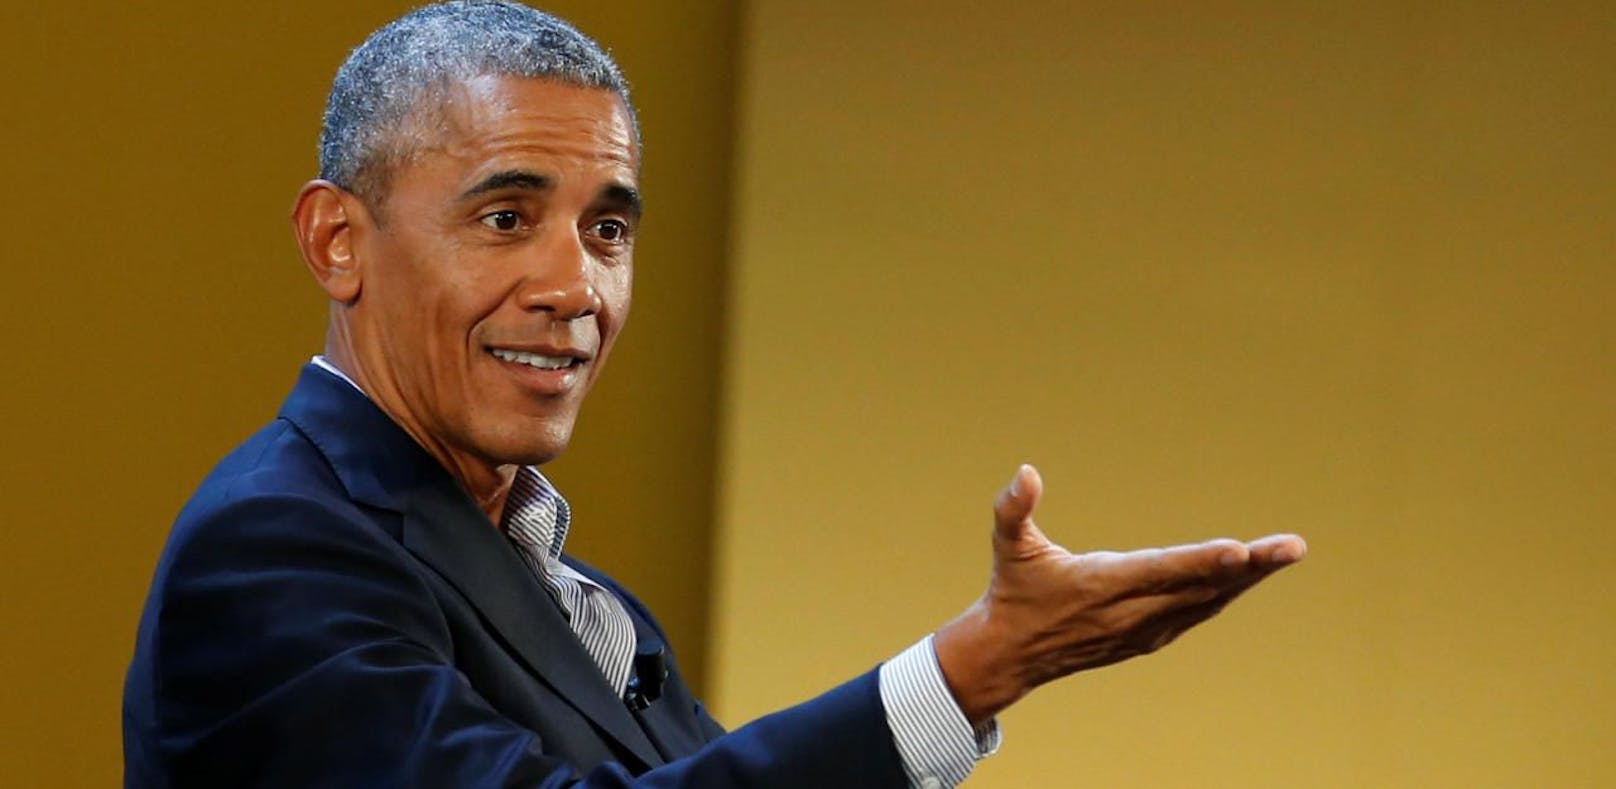 Obama spricht Zuschauern bei Rap-Konzert Mut zu